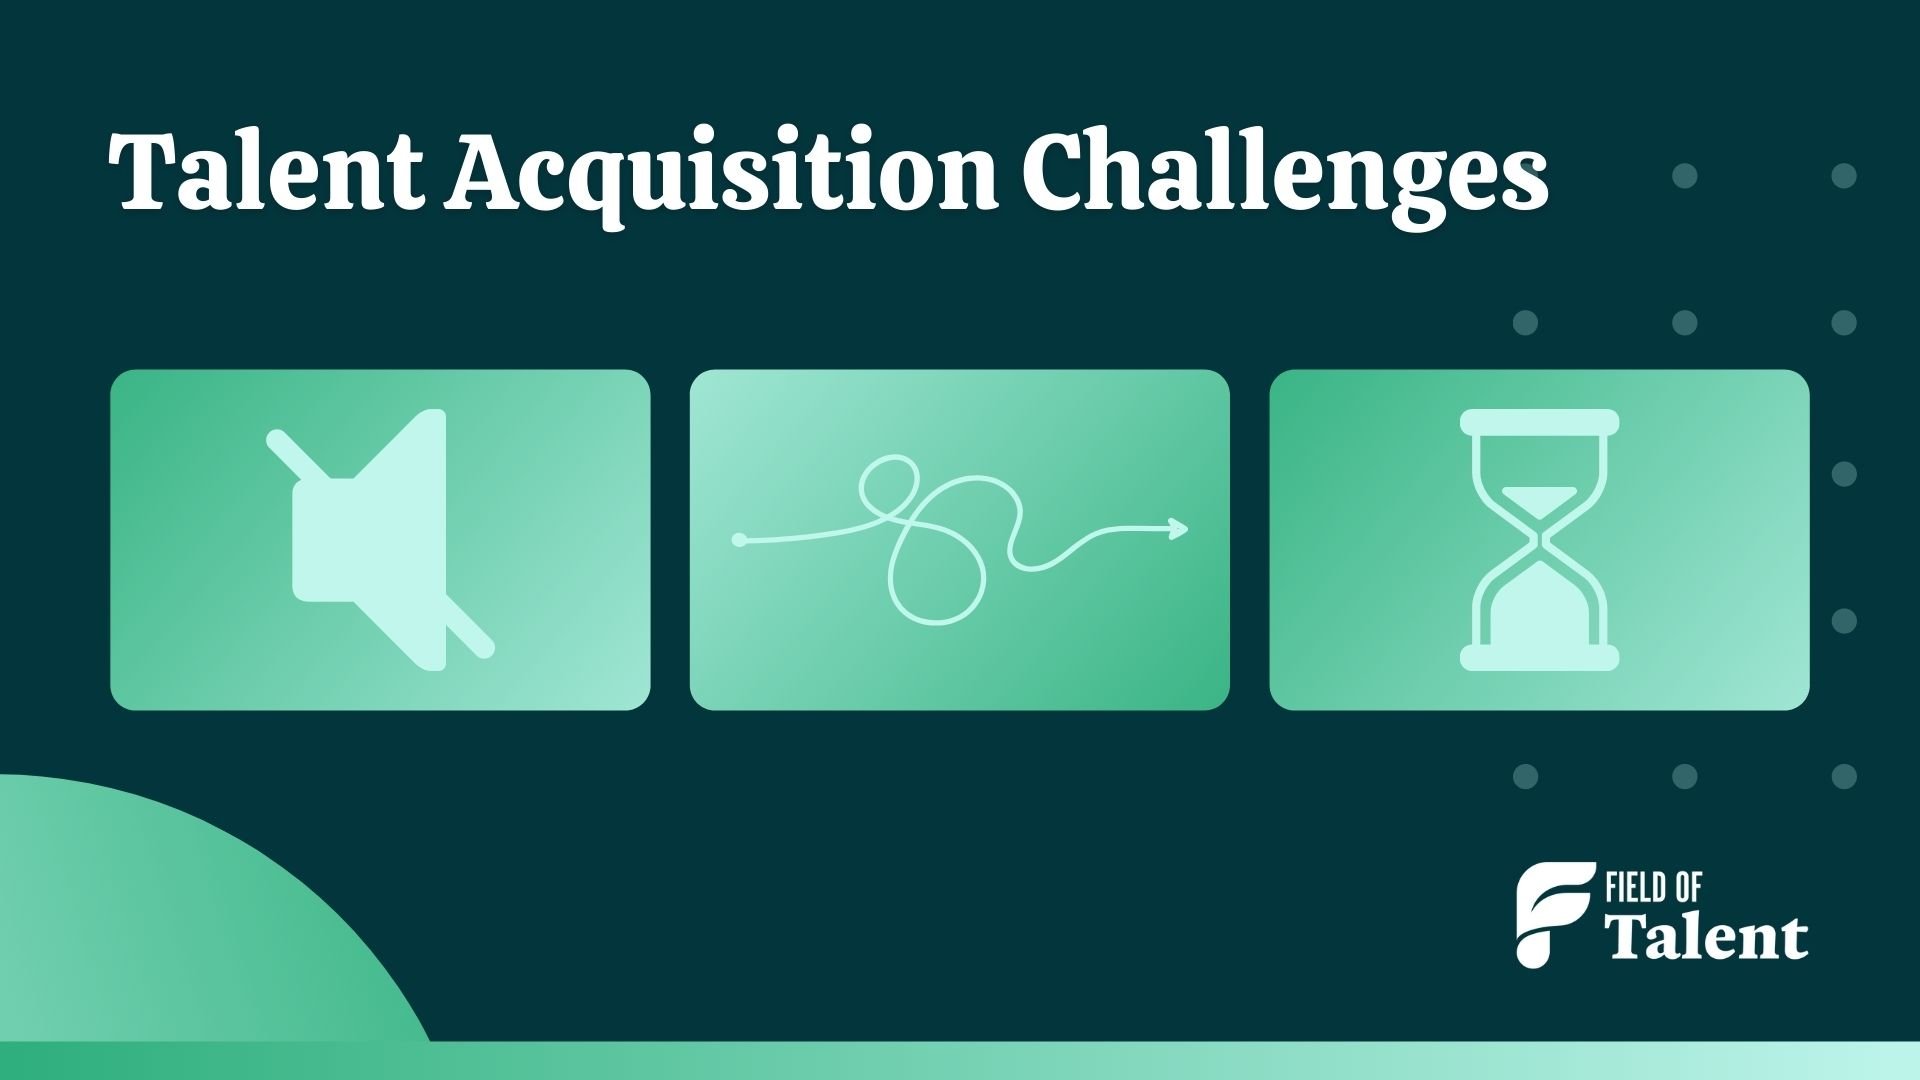 Common talent acquisition challenges